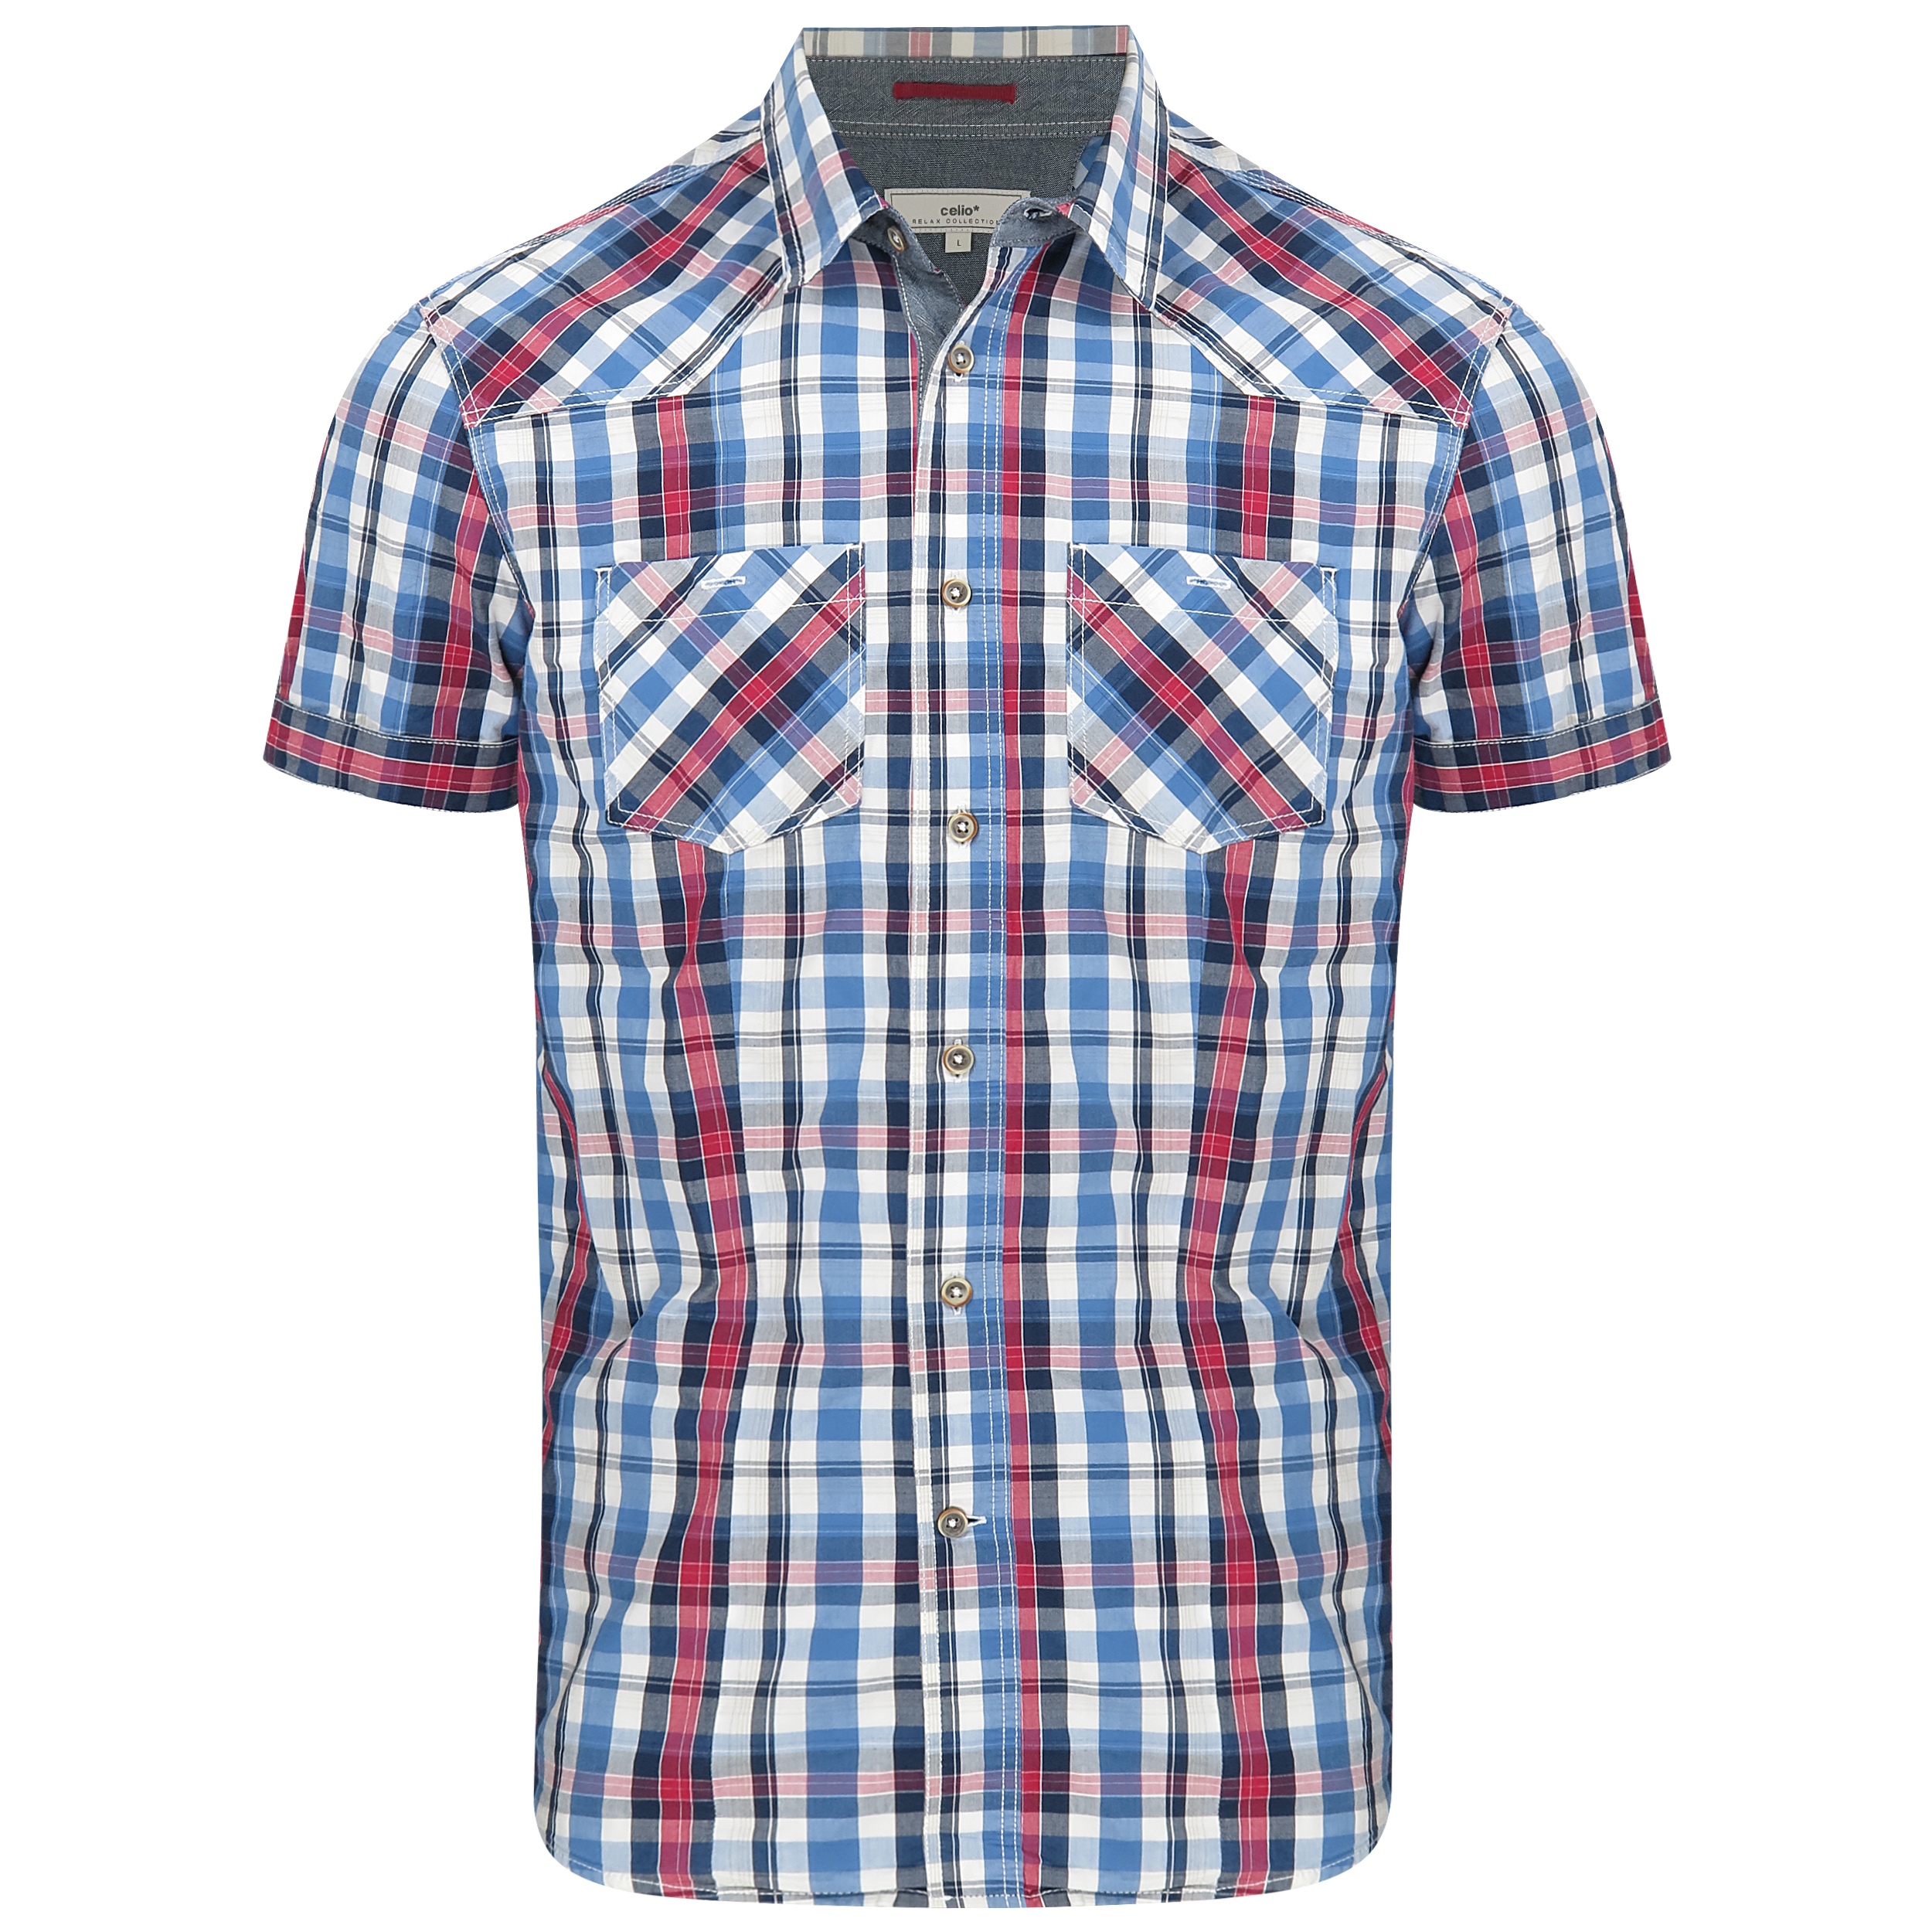 نکته خرید - قیمت روز پیراهن آستین کوتاه مردانه سلیو مدل E1 خرید